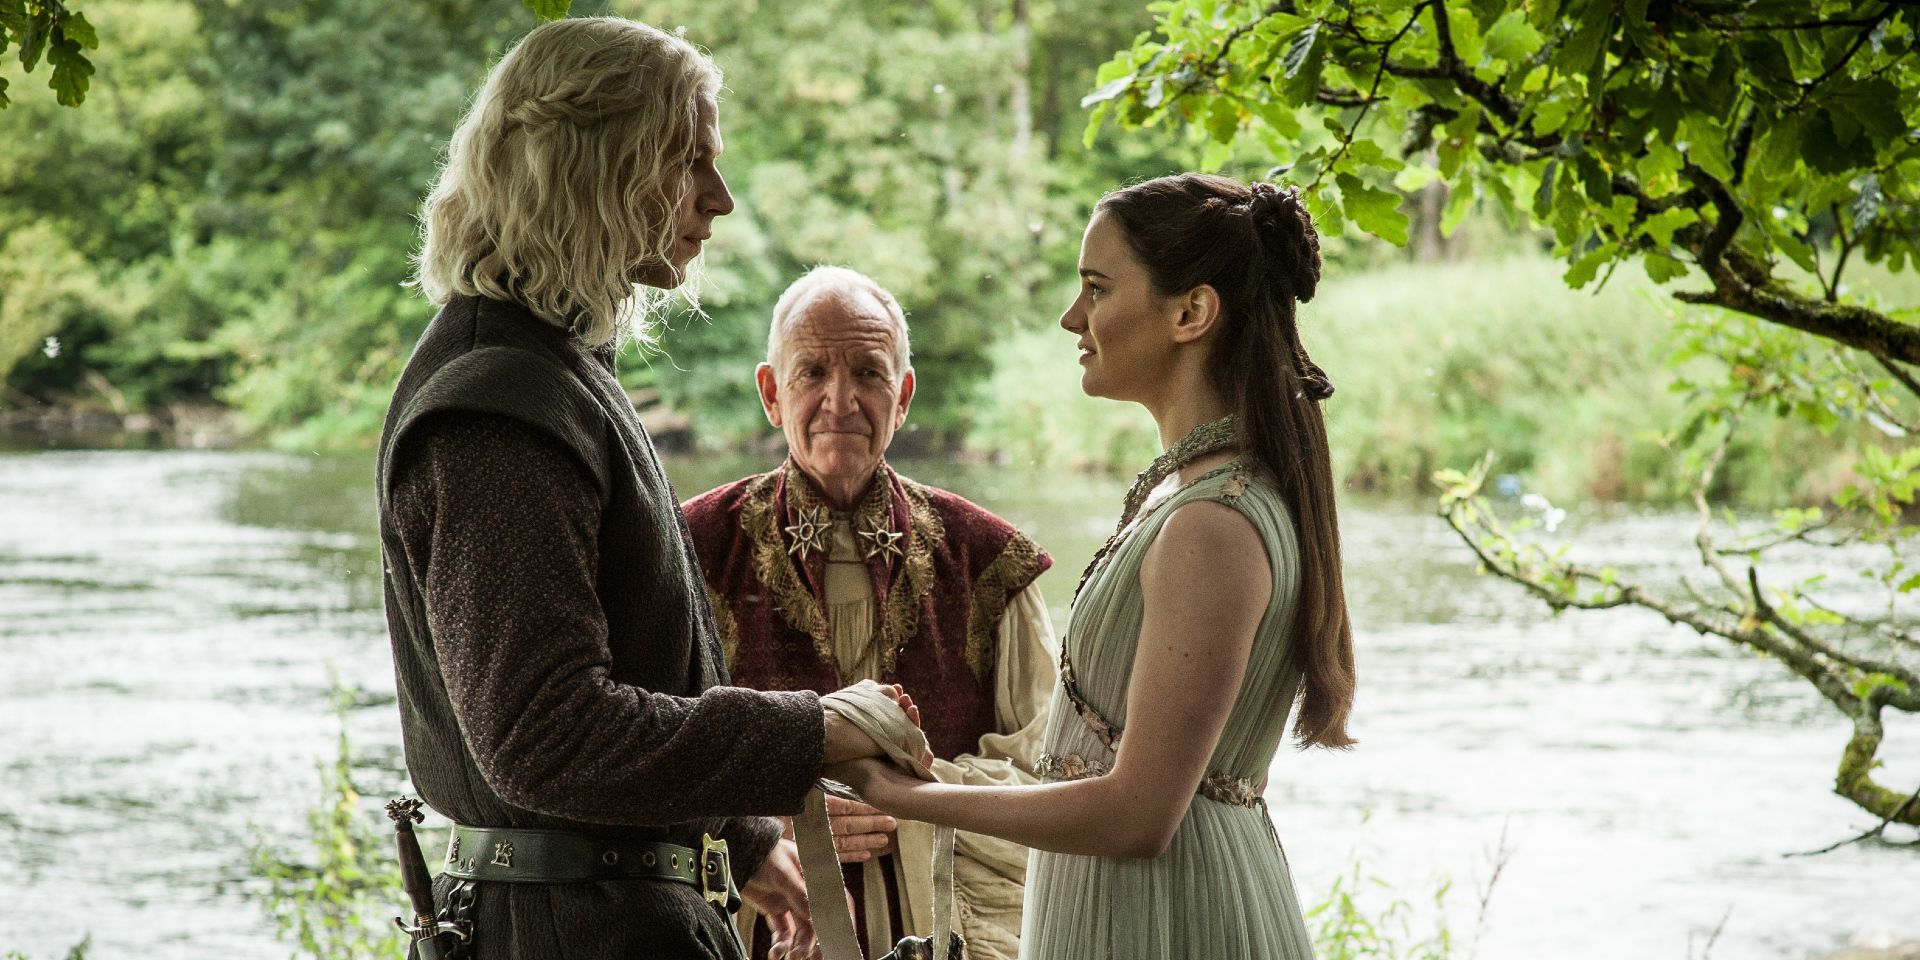 Prince Rhaegar Targaryen and Lyanna Stark eloping in Game of Thrones